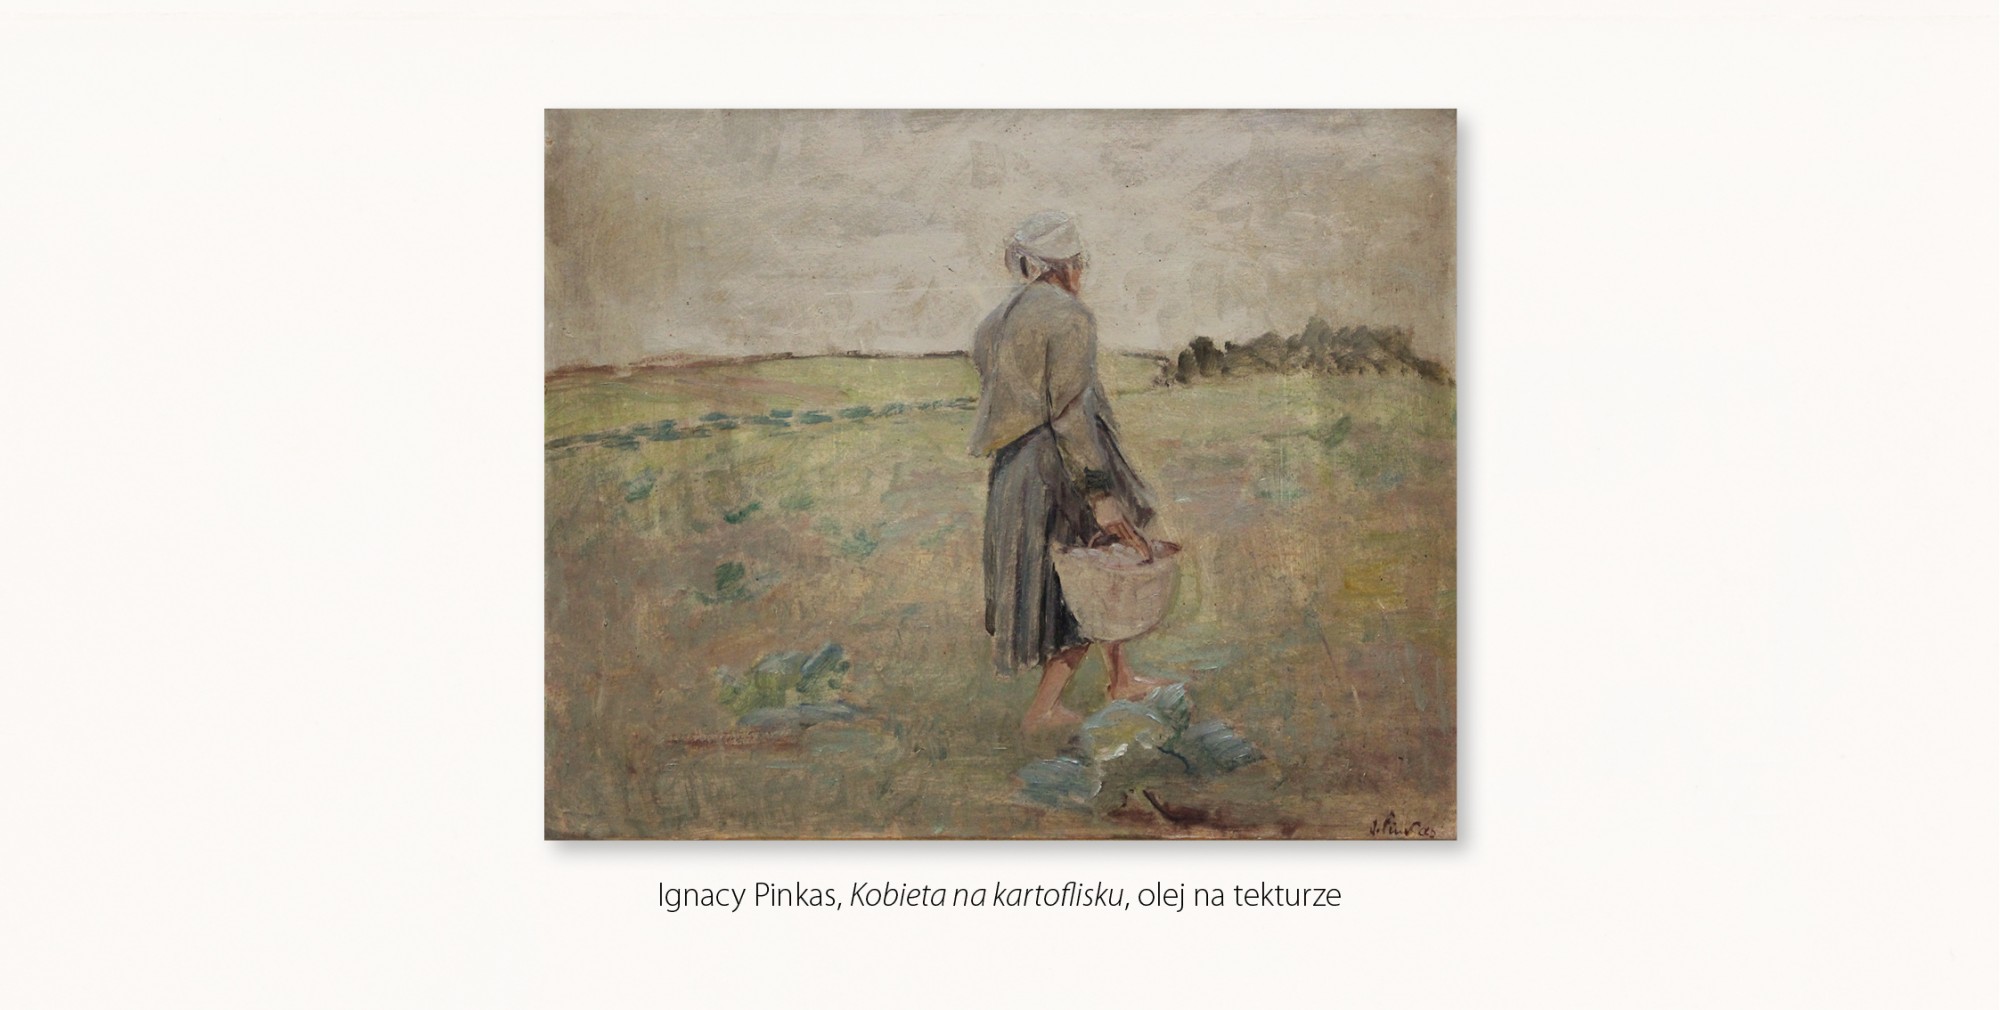 Ignacy Pinkas, Kobieta na kartoflisku, olej na tekturze, przedstawia rozległe pole z centralnie umieszczoną postacią idącej boso kobiety.